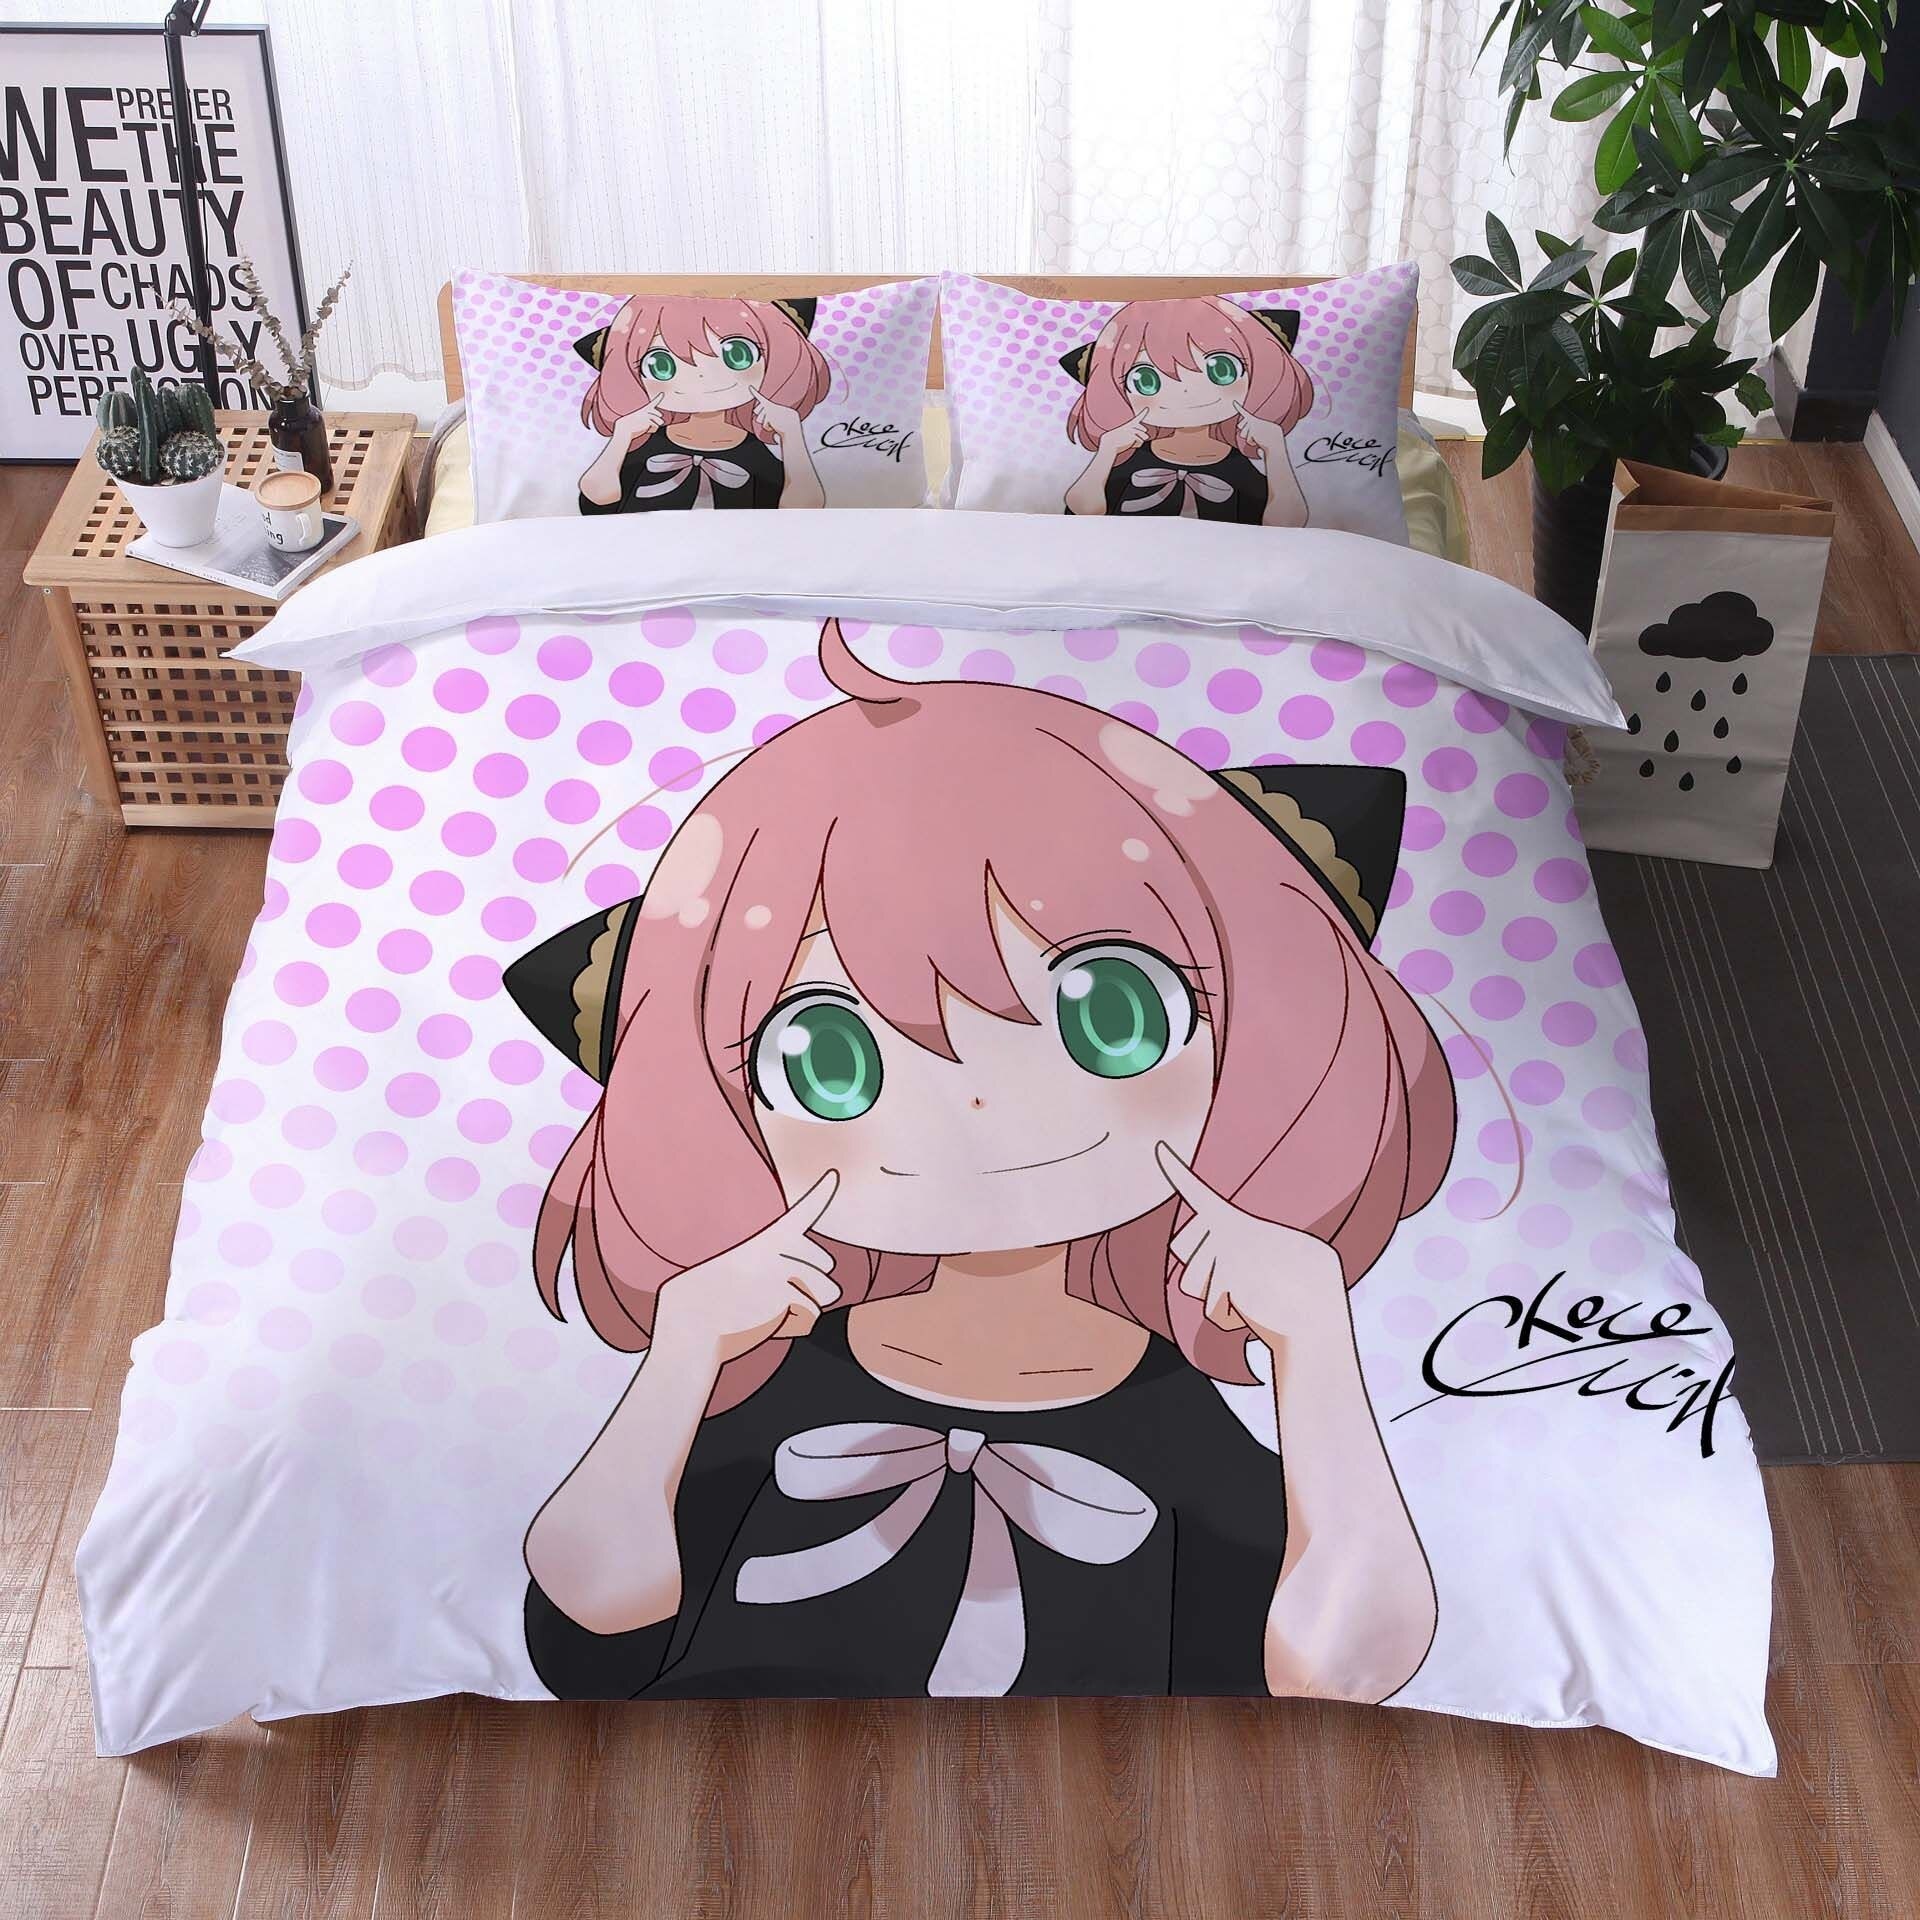 动漫床单套装 Anime Bed Sheet Set, Furniture & Home Living, Bedding & Towels on  Carousell